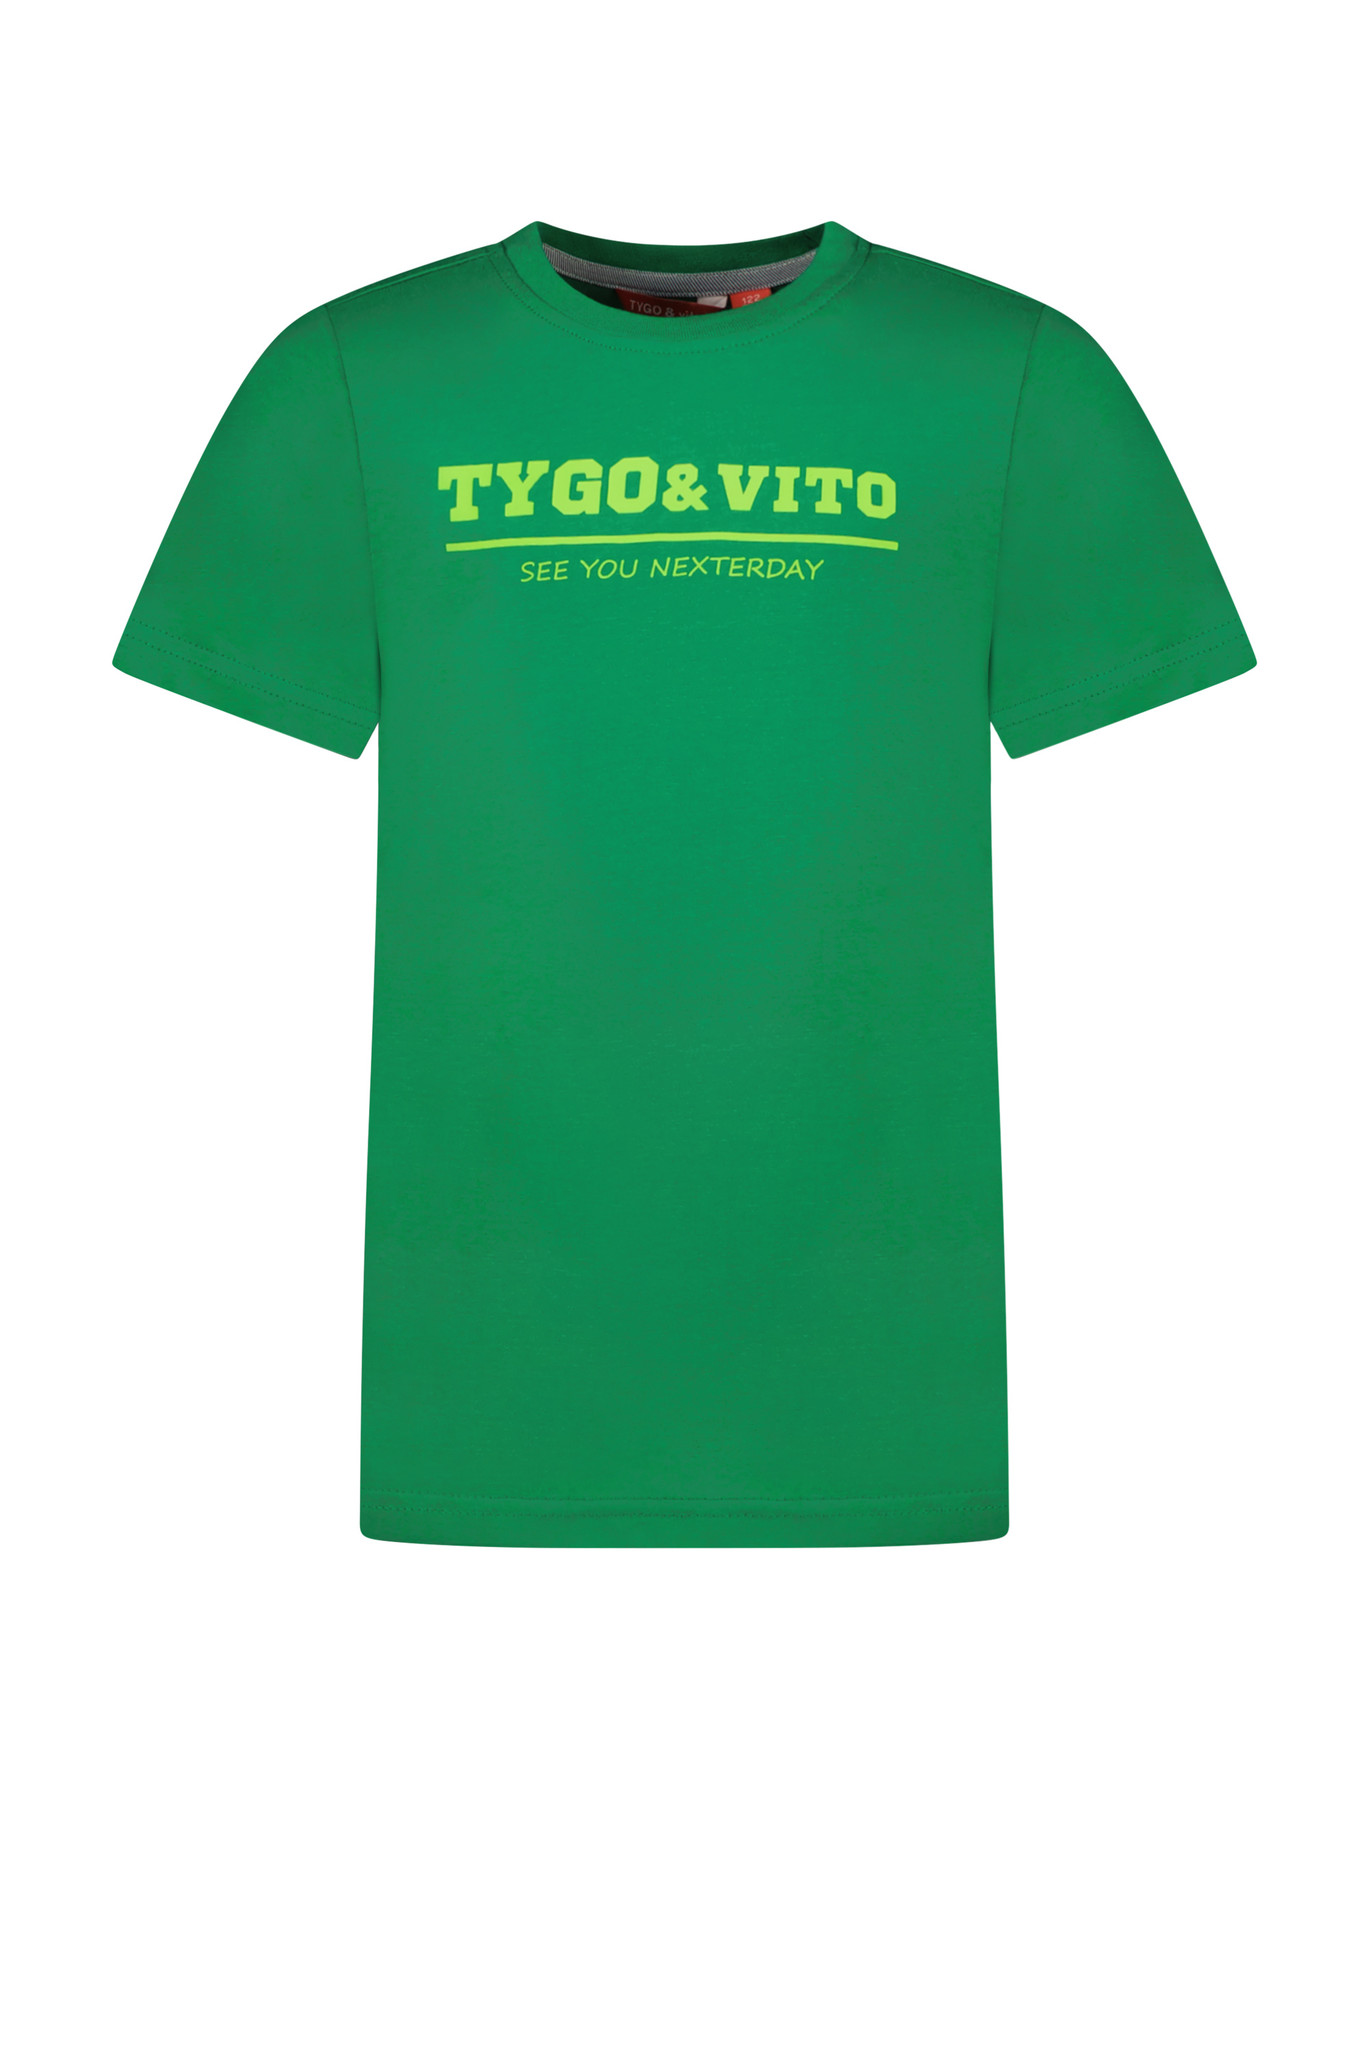 TYGO & vito X302-6420 Jongens T-shirt - Maat 110/116